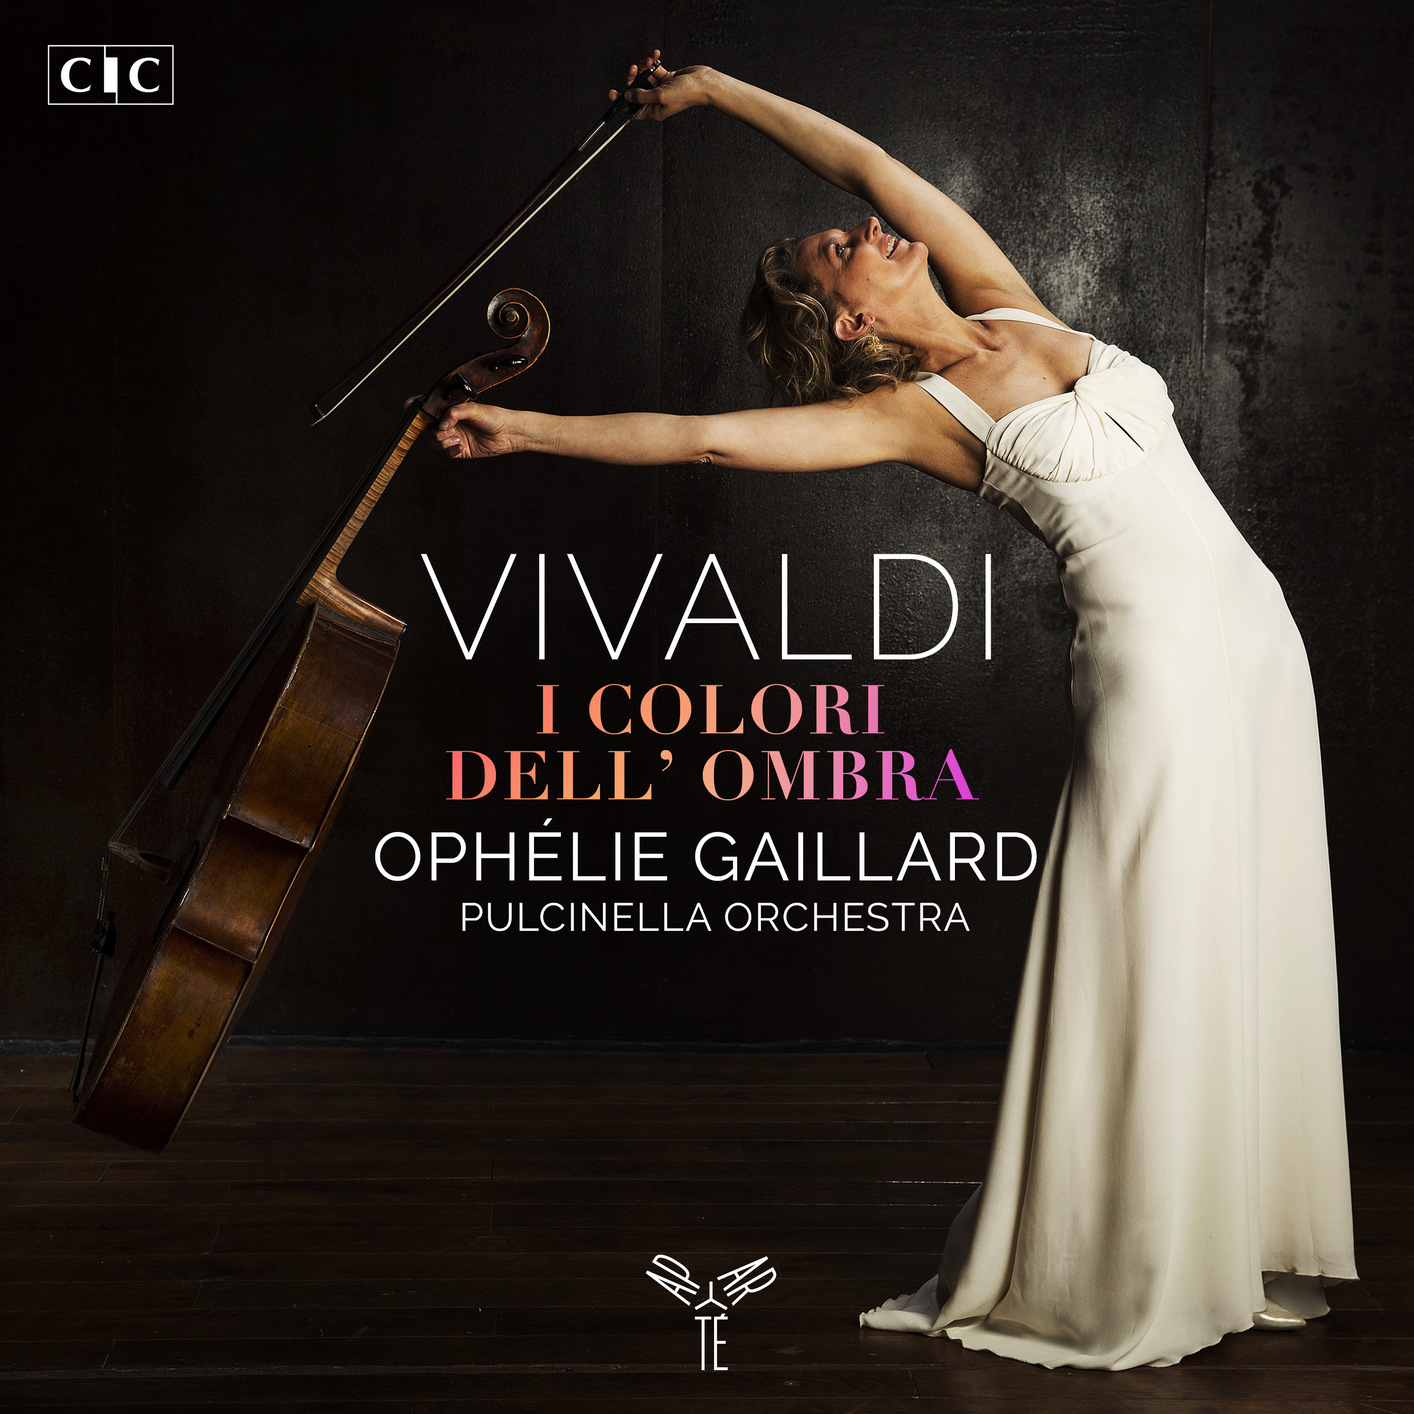 Ophelie Gaillard and Pulcinella Orchestra – Vivaldi: I colori dell’ombra (2020) [FLAC 24bit/96kHz]